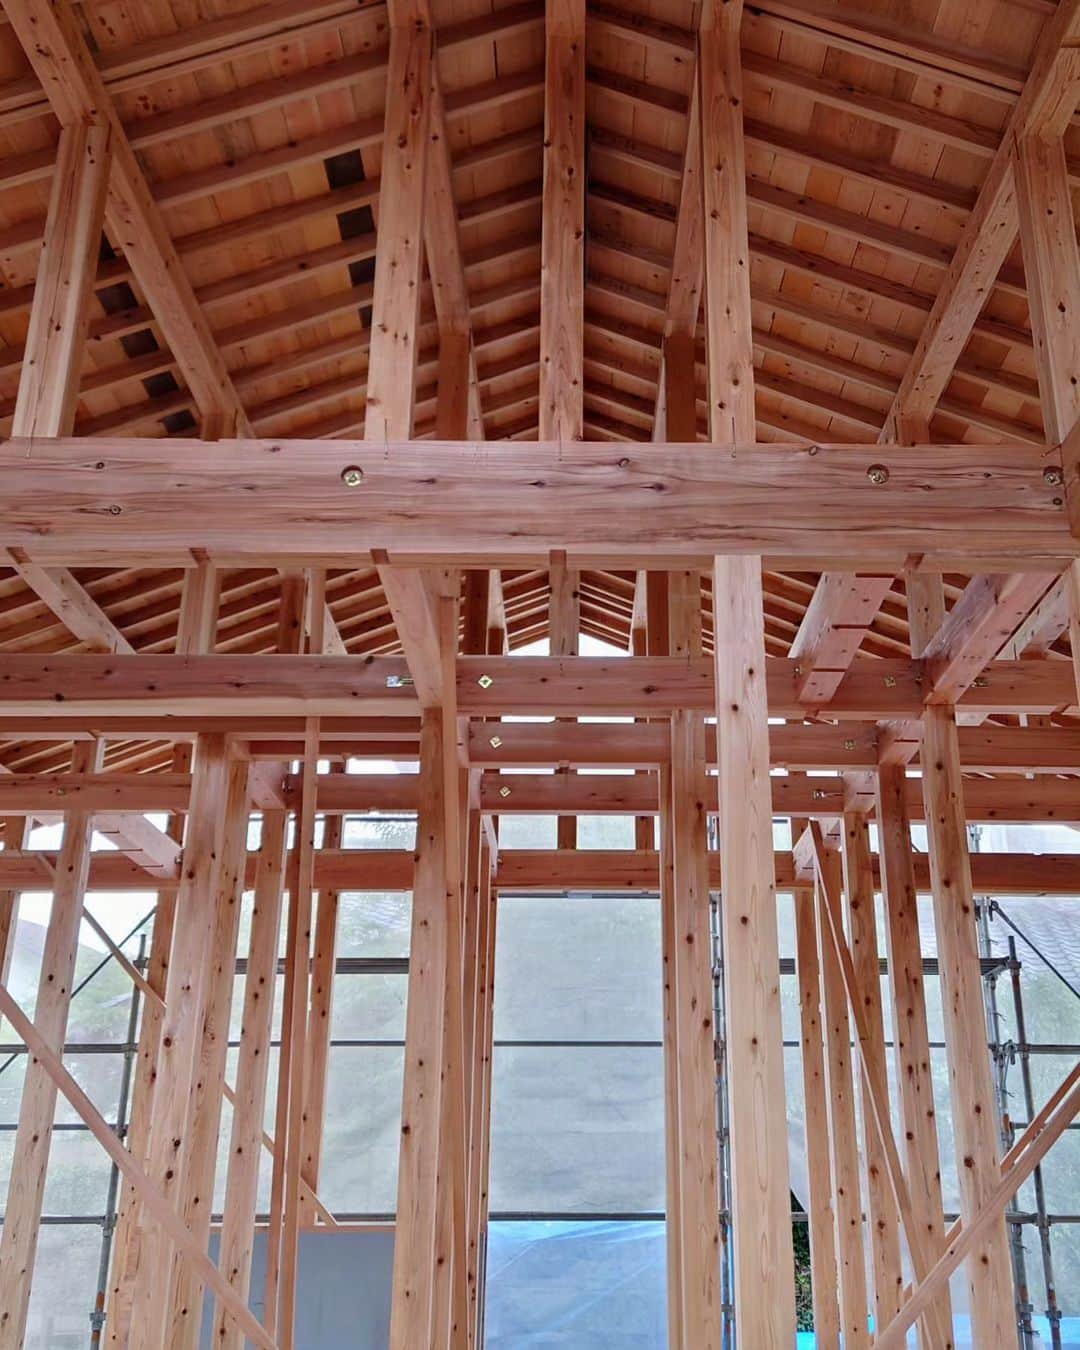 有限会社わさだ工務店のインスタグラム：「羽田の現場。 昨日今日と雨降りでしたが、屋根のルーフィングからの雨漏りもありません。 棟梁は筋交いと間柱入れ作業。 夕方には構造金物の留め付けも。 #木構造 #wbhouse #天然乾燥の杉 #大分の杉 #棟梁の仕事 #注文住宅 #インテリア #マイホーム #新築 #家 #暮らし #住宅 #自然素材 #建築 #住まい #木の家 #デザイン #施工事例 #一戸建て #設計 #ライフスタイル #自由設計 #家づくり #ハウスメーカー #木造住宅 #工務店 #大分の工務店 #暖かい家 #涼しい家 #わさだ工務店」